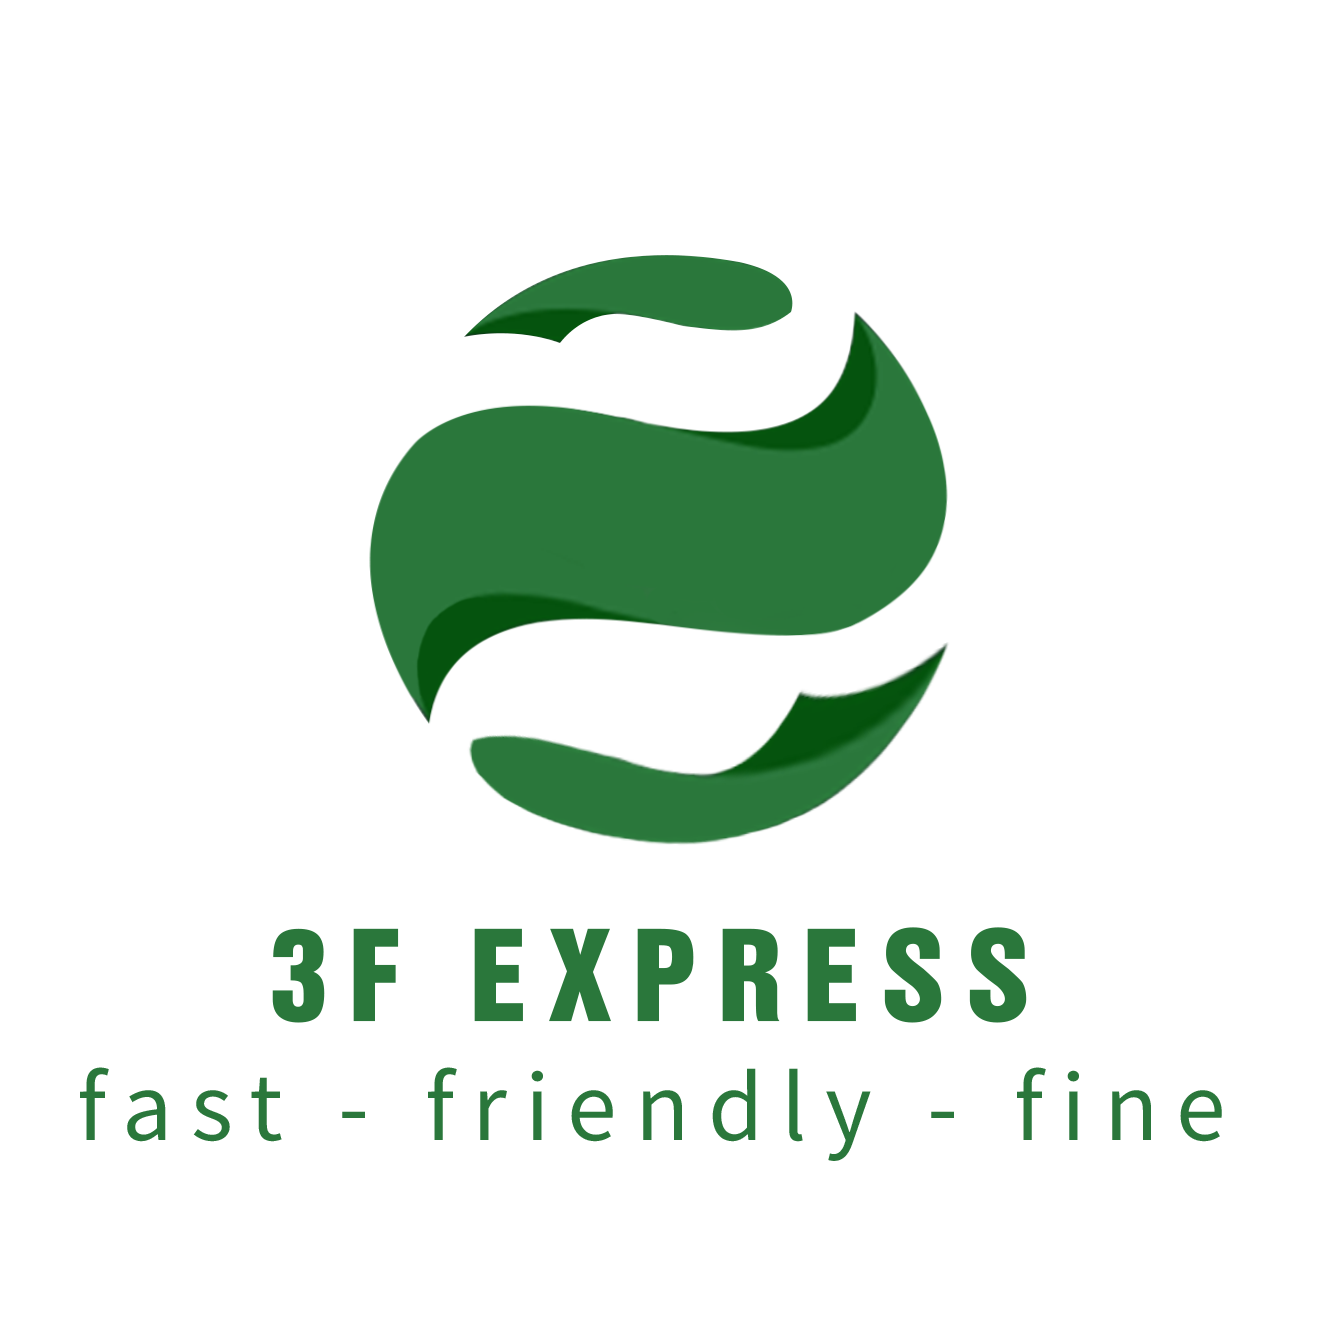 929 Express